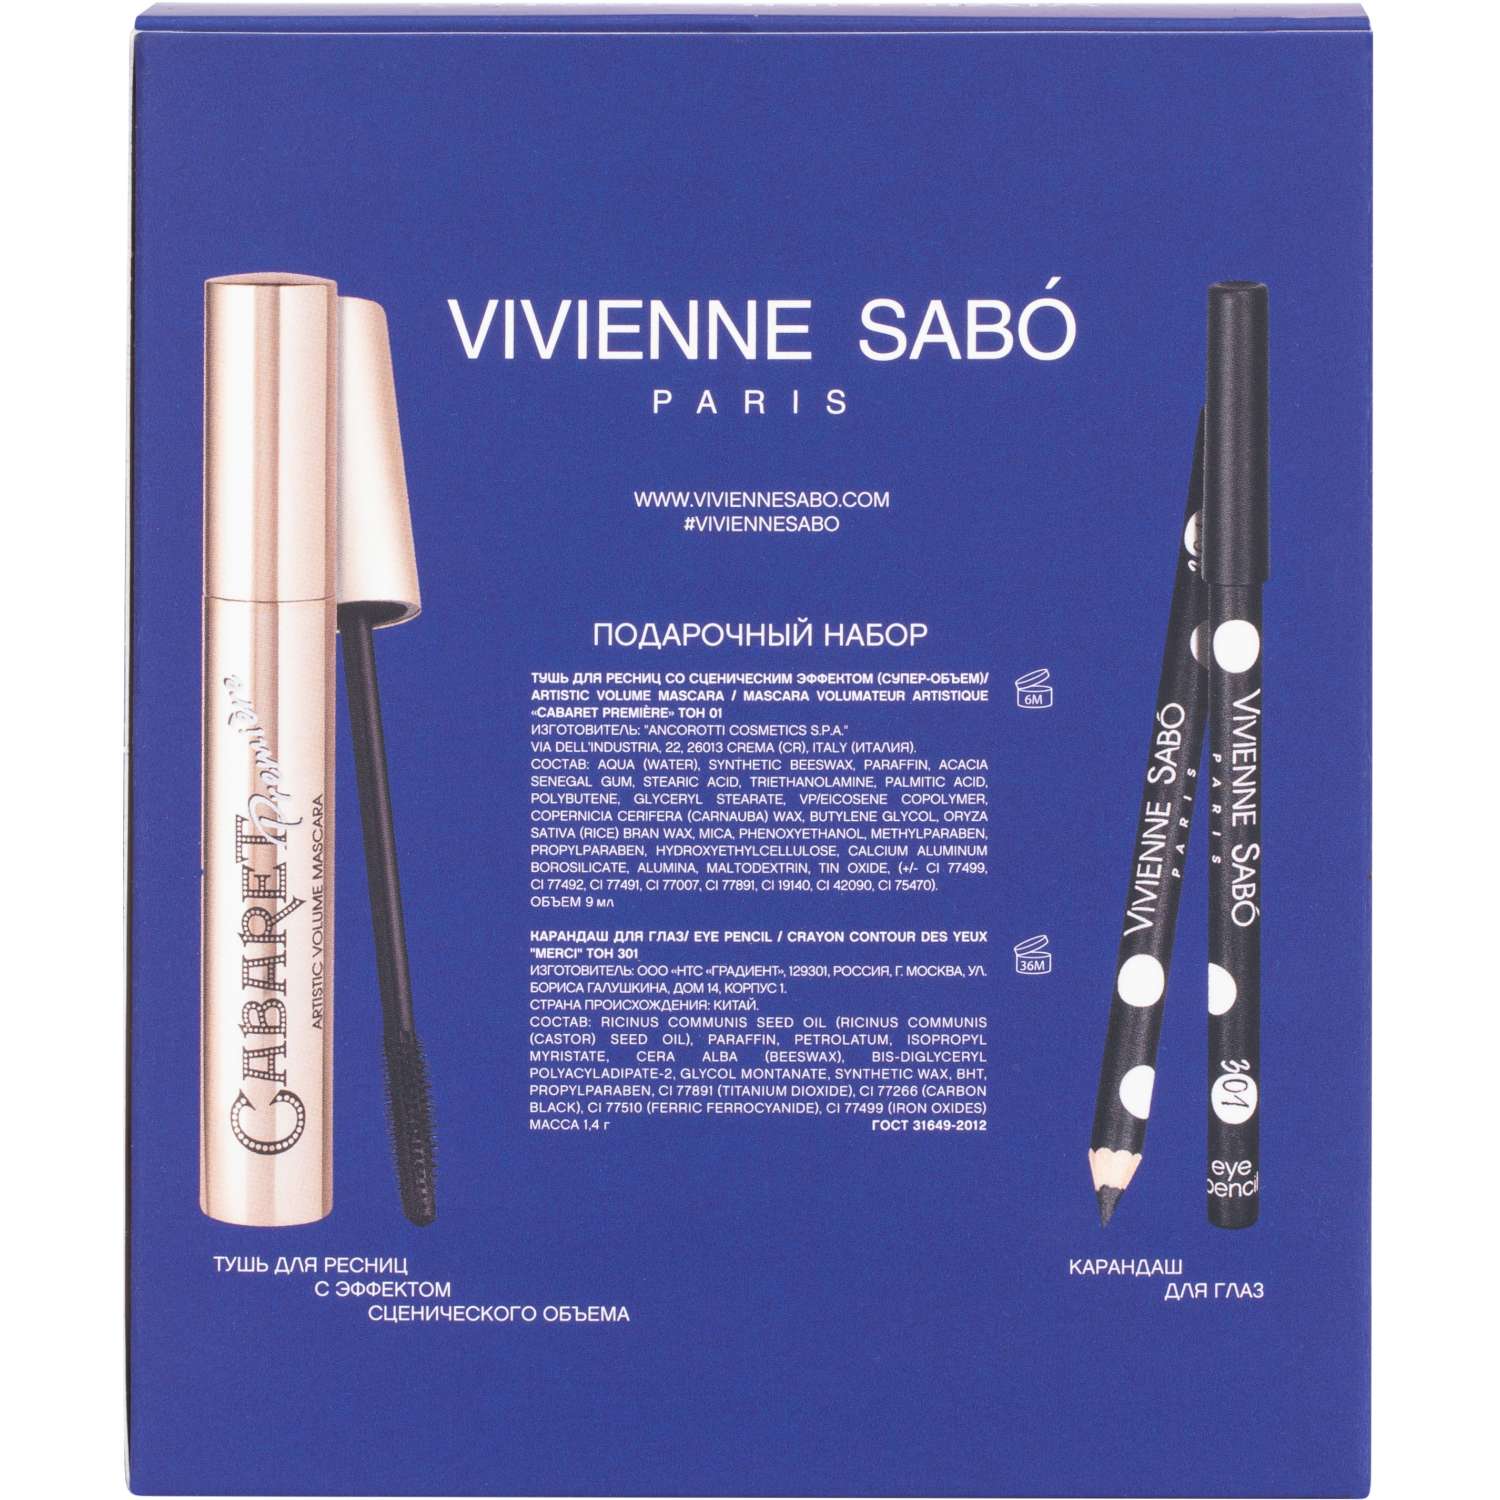 Подарочный набор Vivienne Sabo Тушь Cabaret тон 01 и Карандаш для глаз Merci тон 301 - фото 2